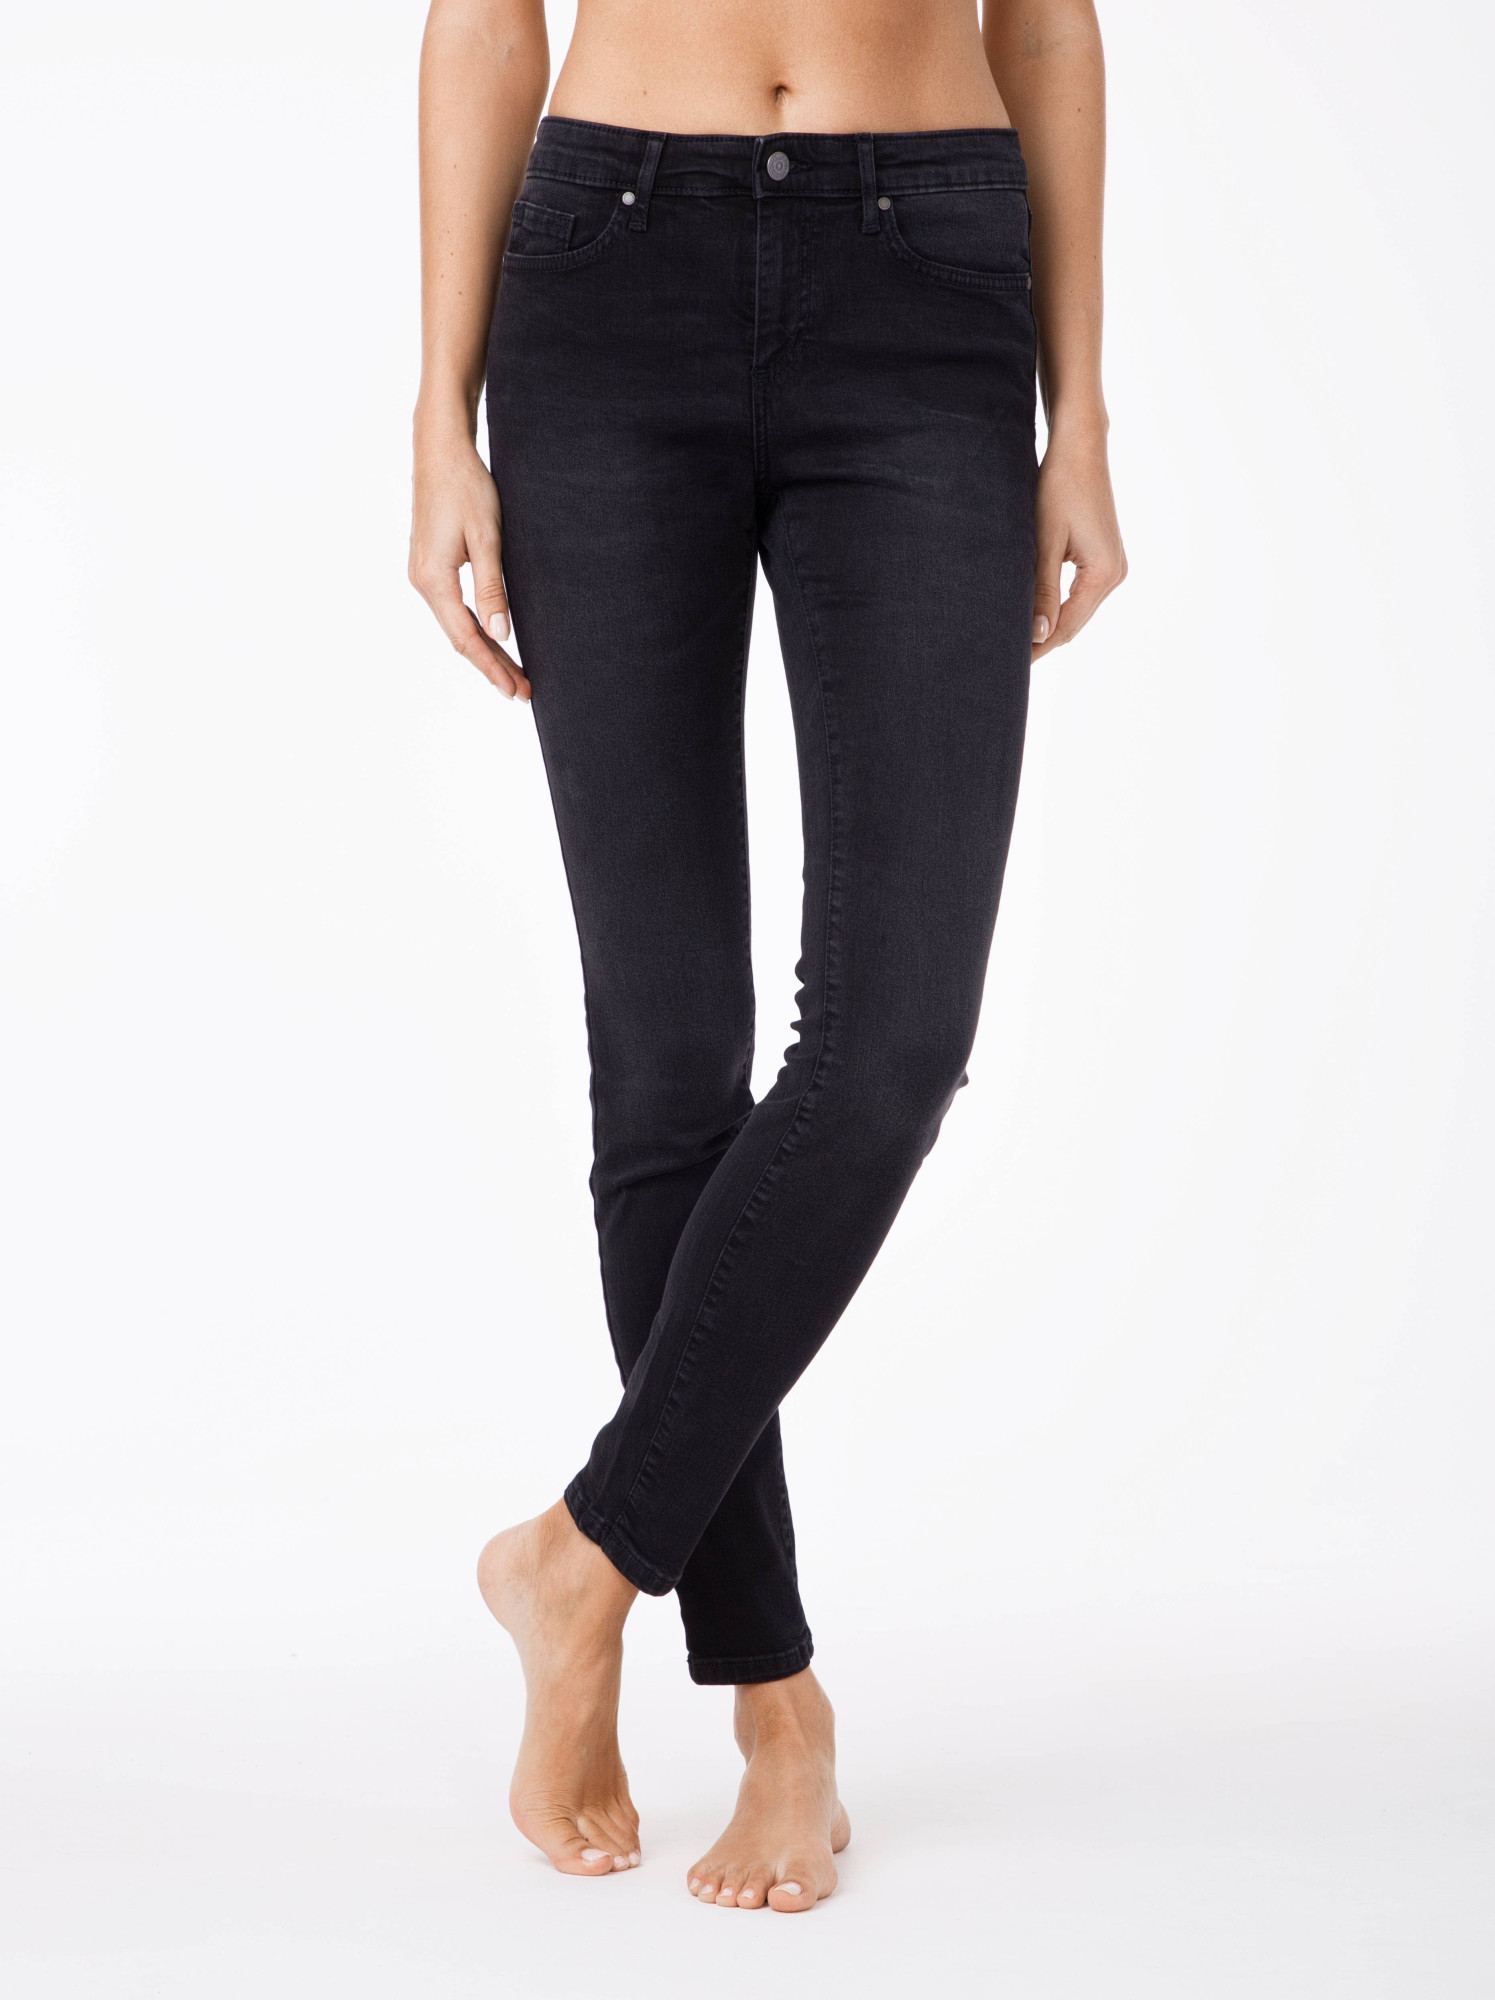 CONTE Jeans Black 170-94/S